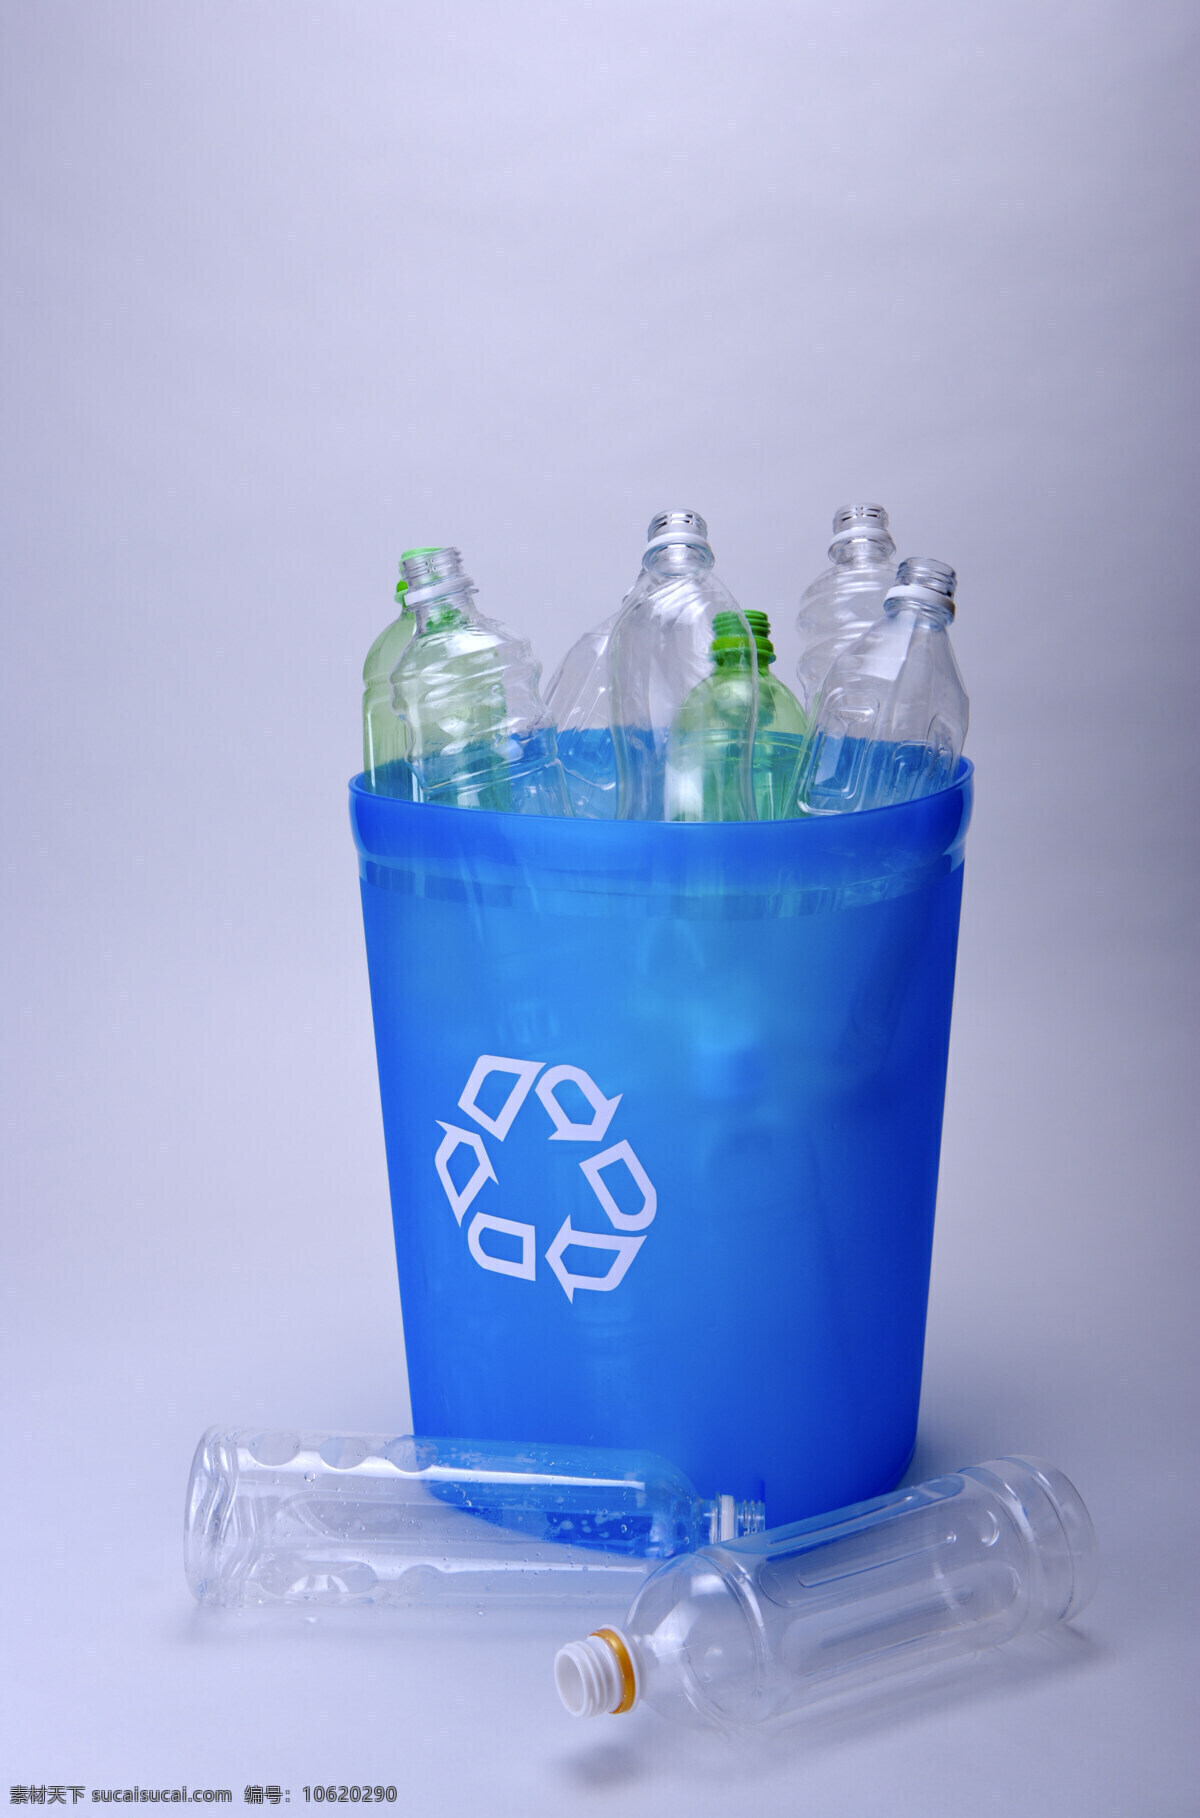 扔 满 塑料瓶 回收 利用 垃圾桶 水瓶 特写 垃圾 环保 公益广告 回收利用 可利用资源 高清图片 其他类别 生活百科